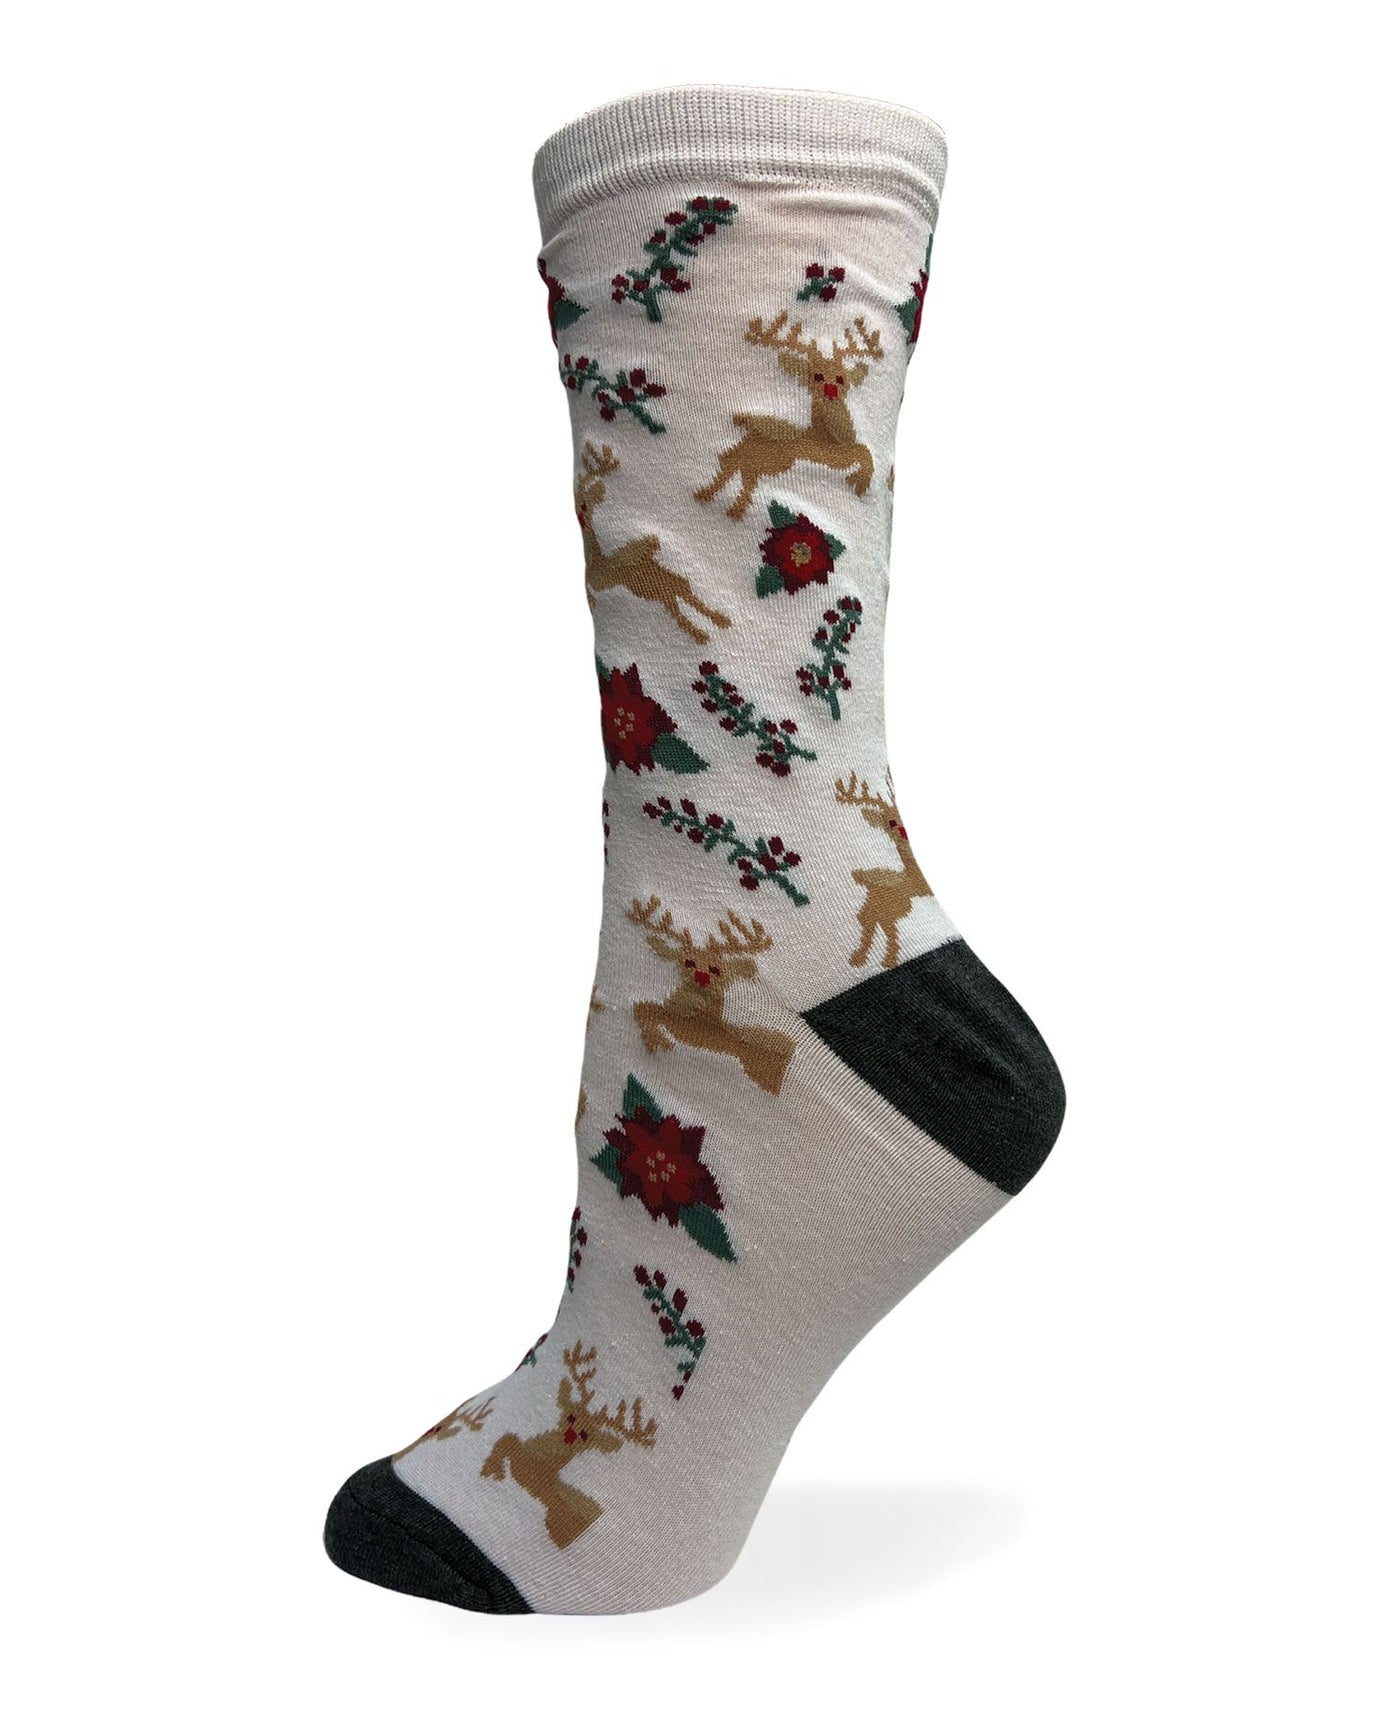 " Reindeer W/ Flower" Cotton Dress sock by Point Zero-Medium